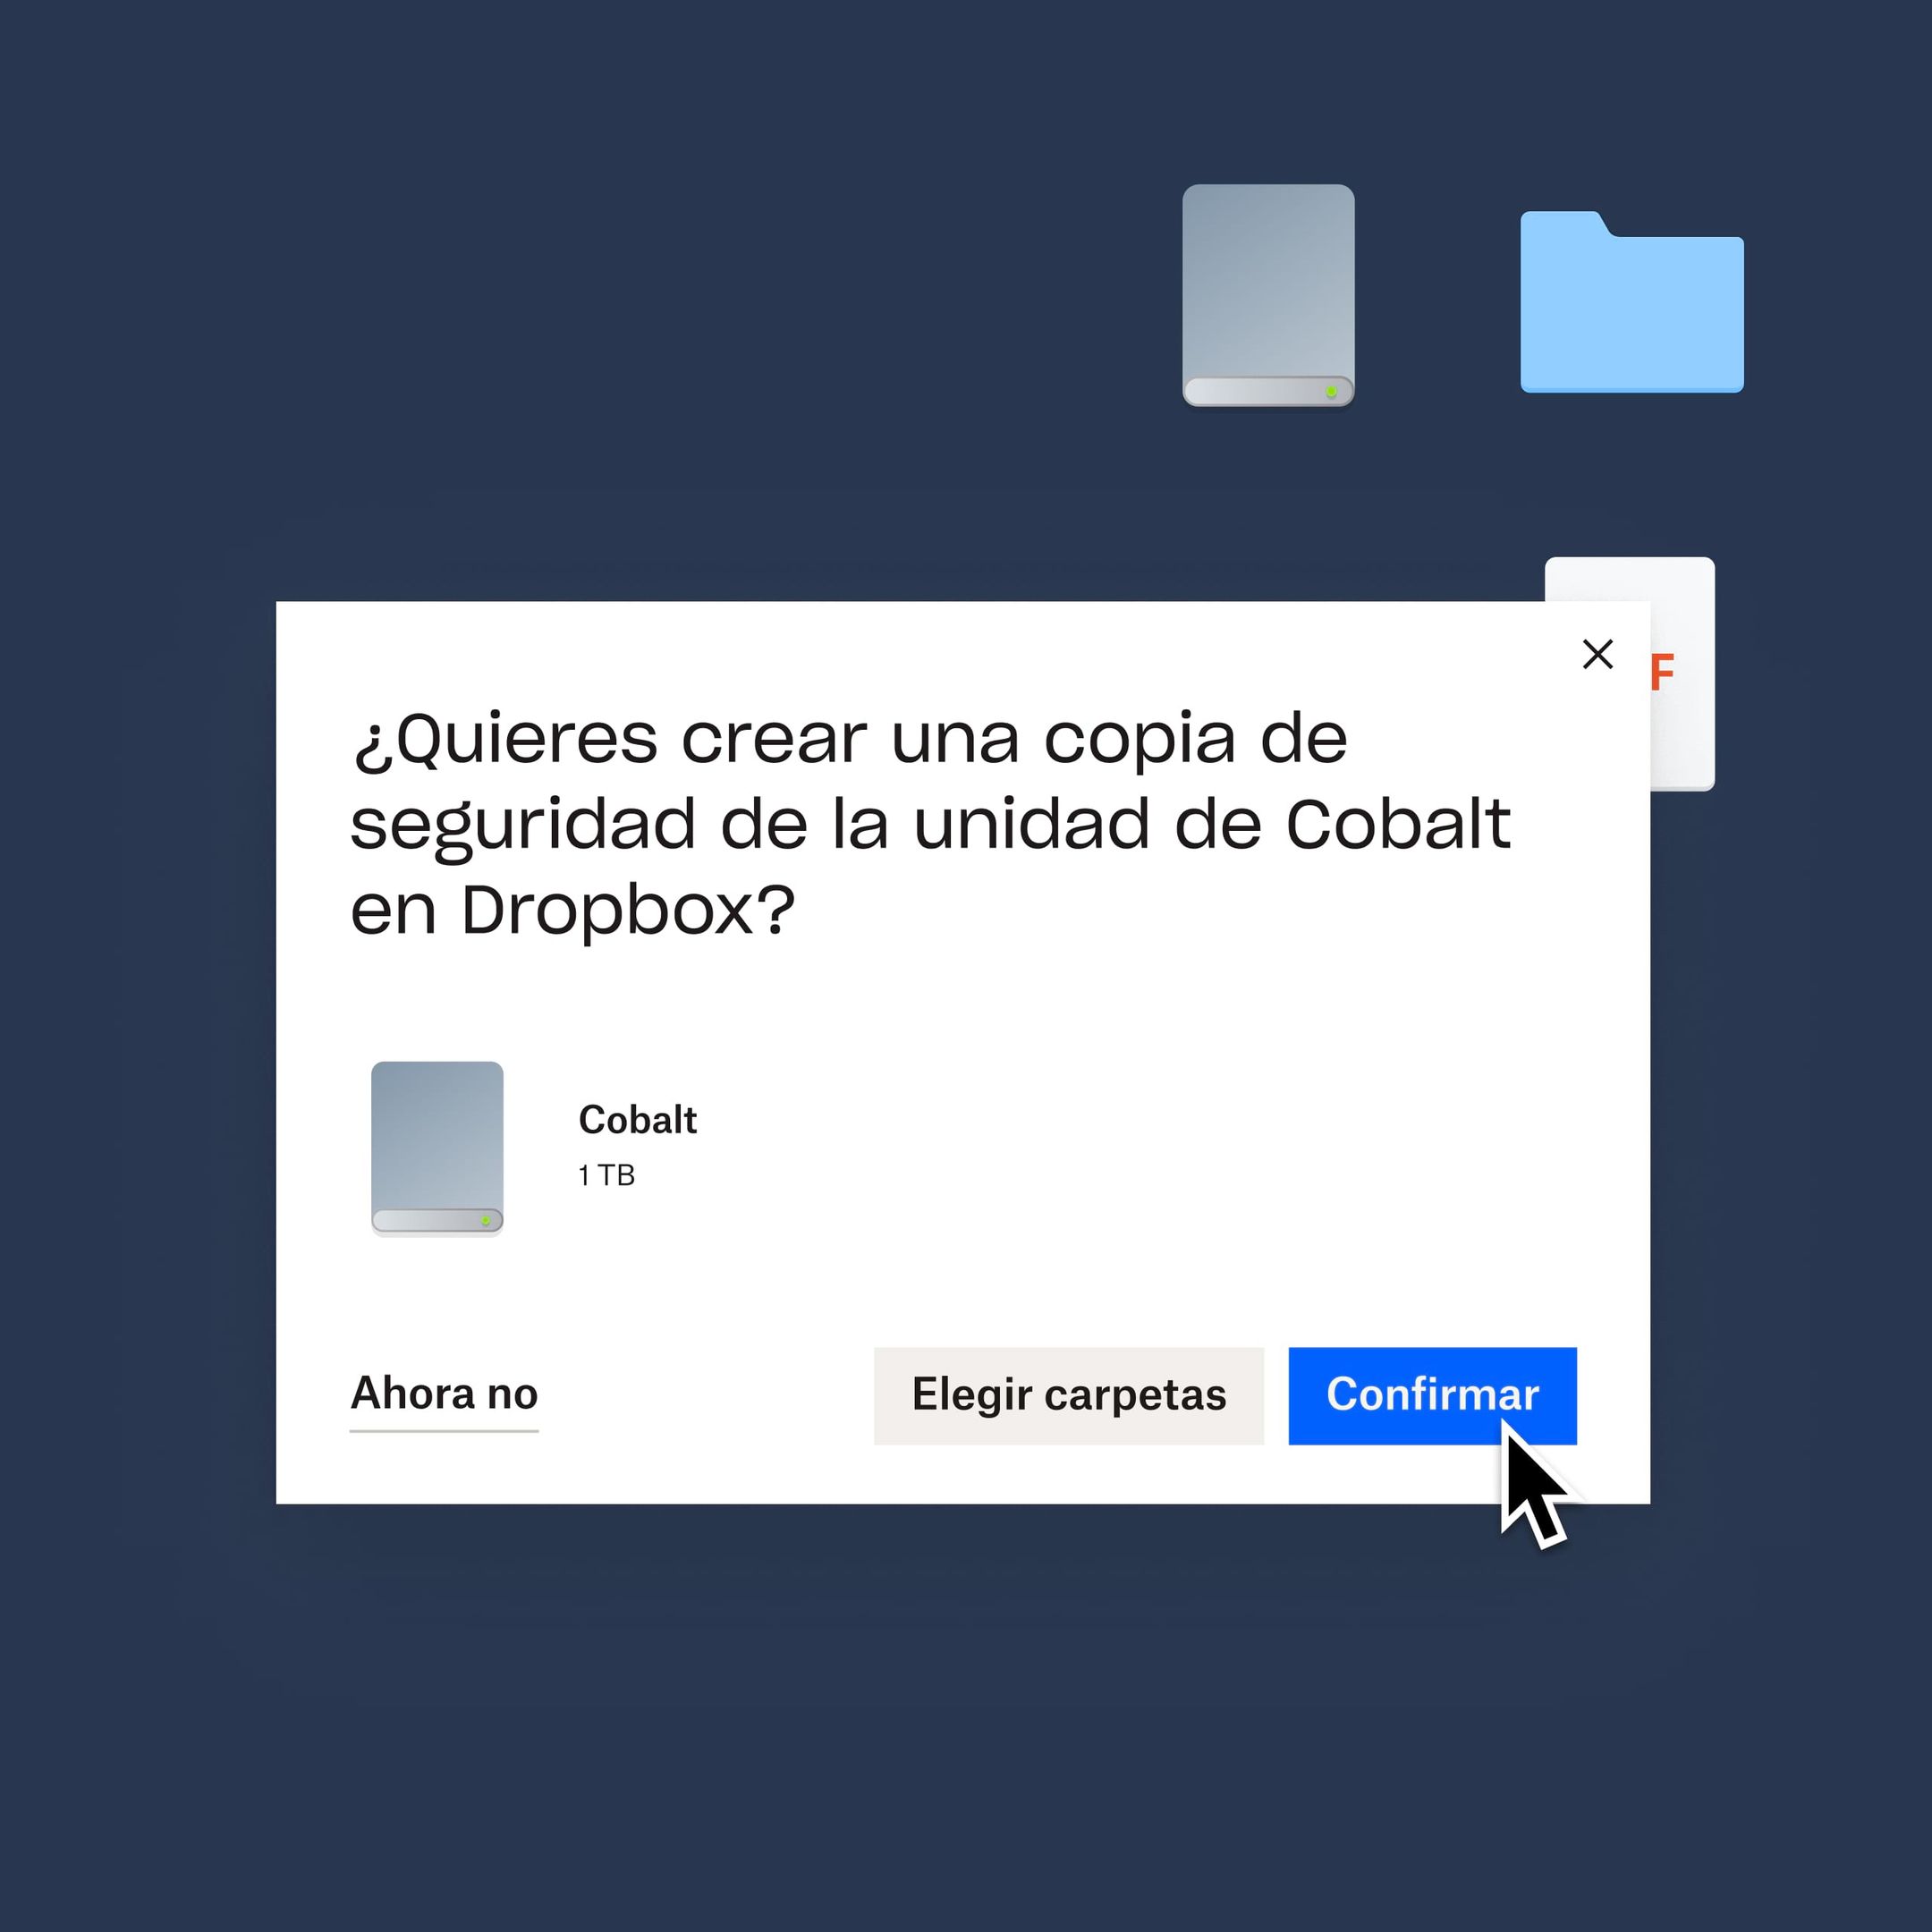 Un usuario hace clic en un botón azul &quot;Confirmar&quot; para hacer una copia de seguridad de su unidad Cobalt en Dropbox